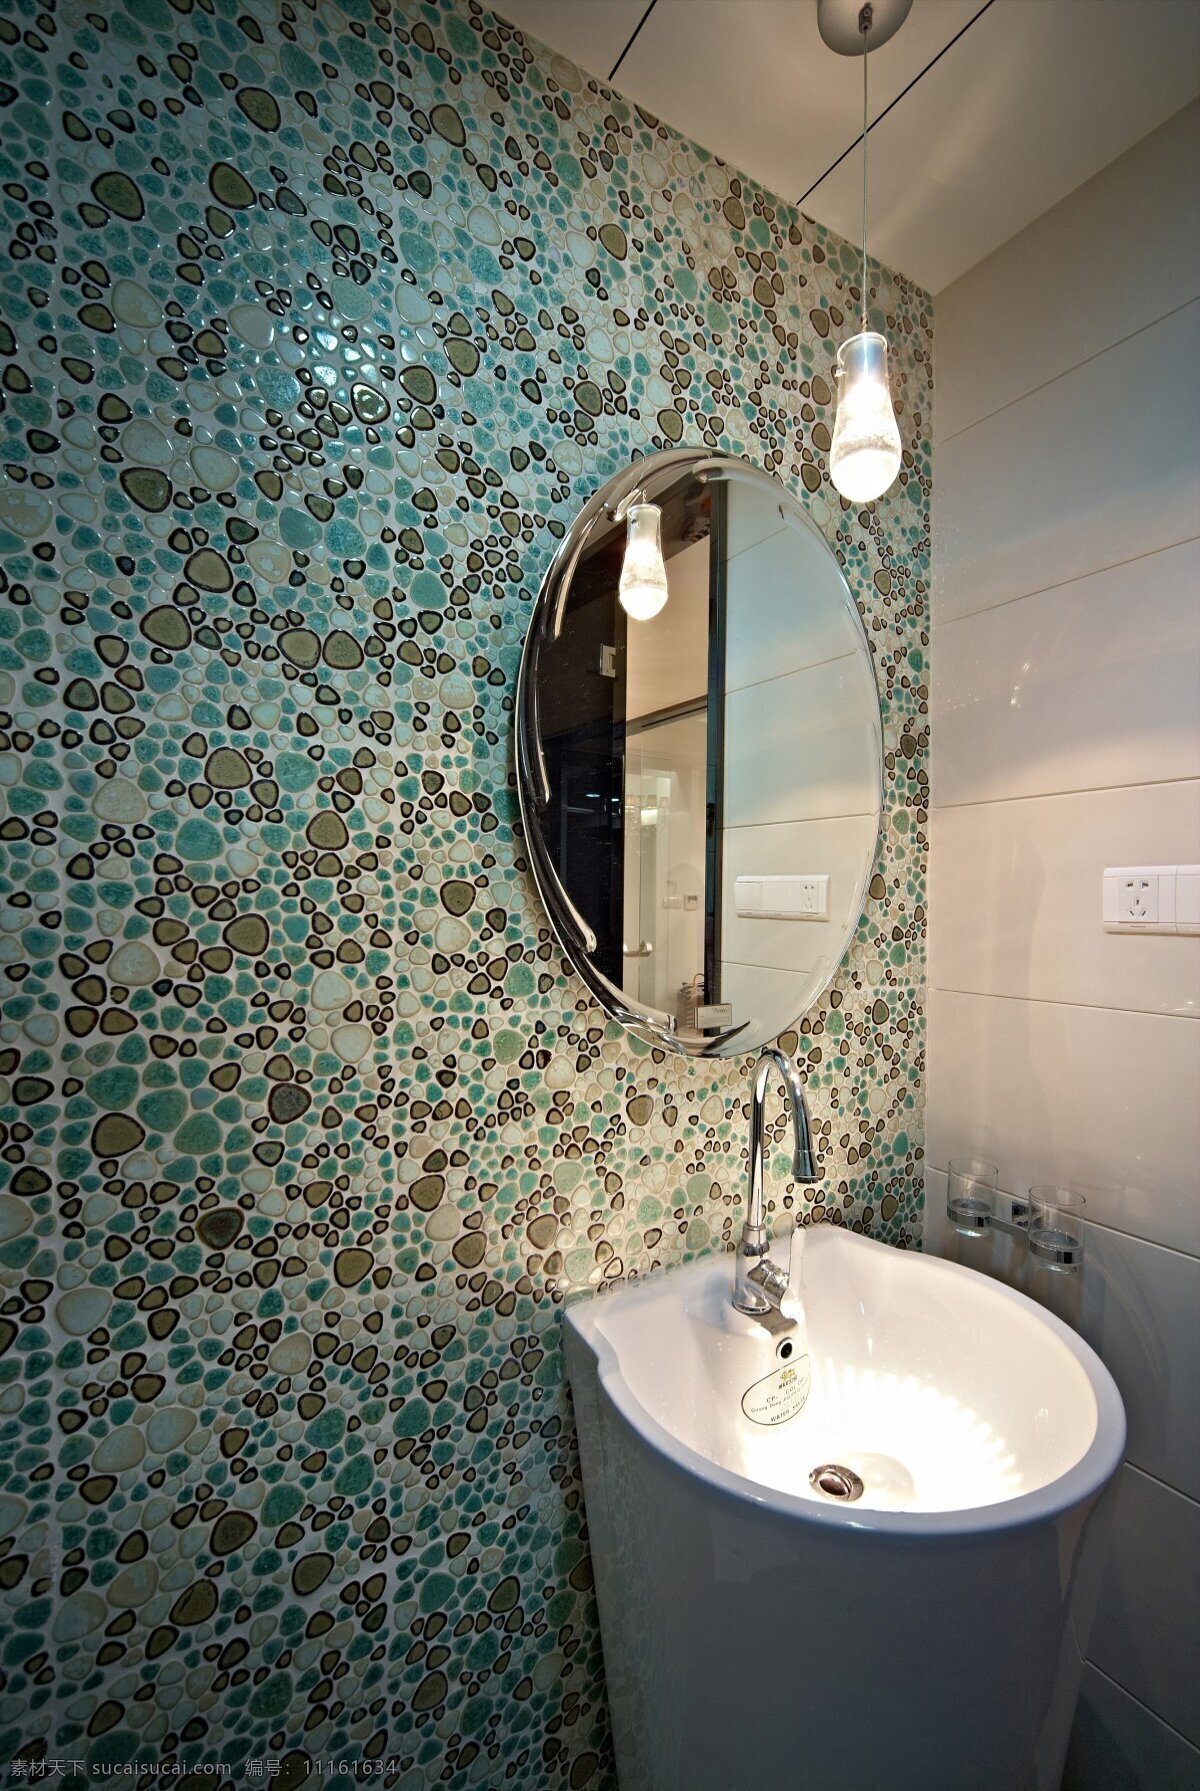 现代 时尚 浴室 马赛克 背景 墙 室内装修 效果图 浴室装修 洗手池 椭圆镜子 长吊灯